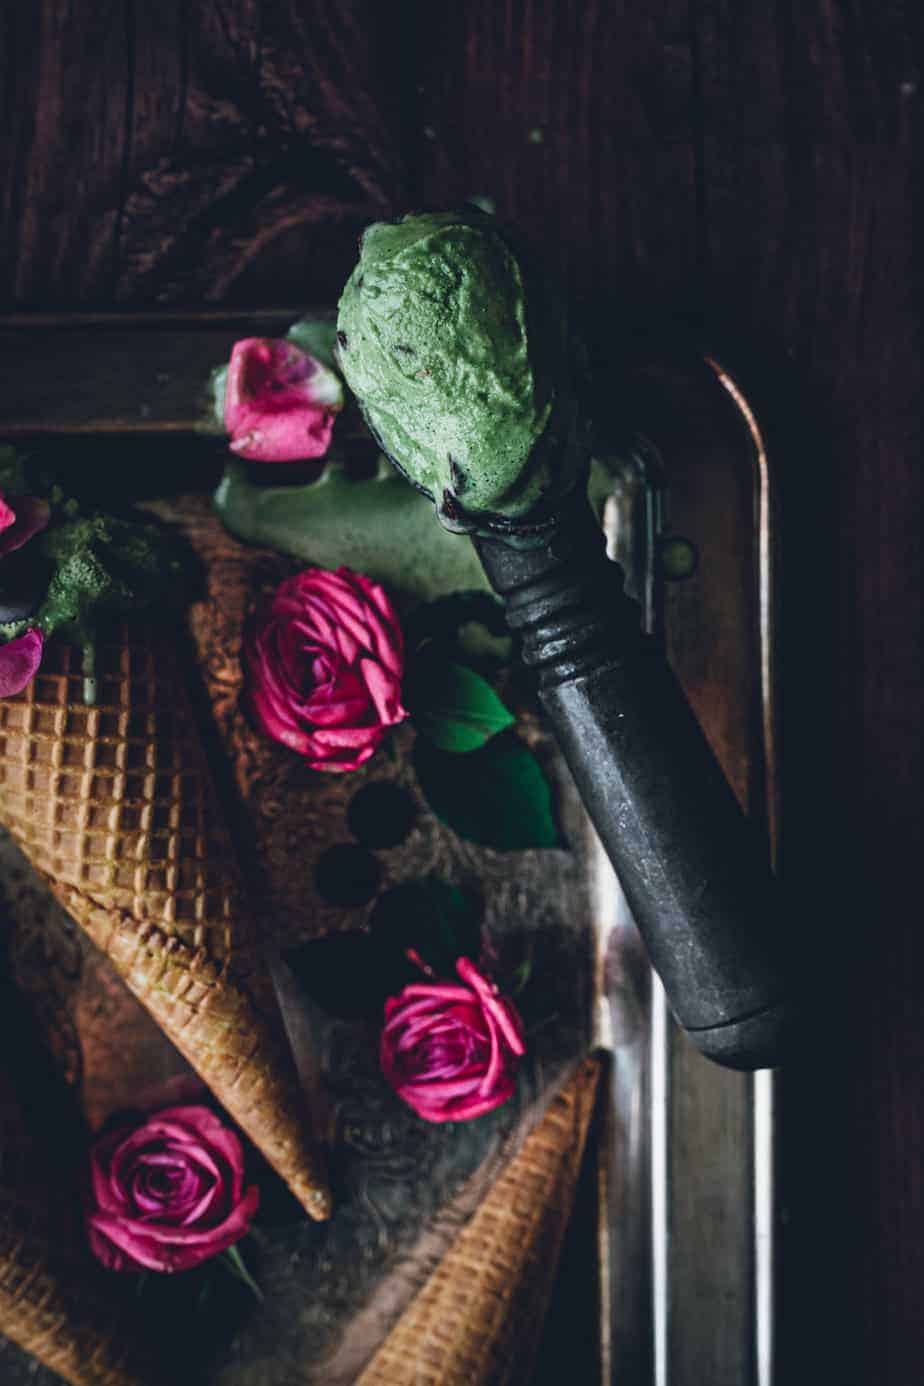 vintage ice cream scoop with vibrant green mint chocolate ice cream